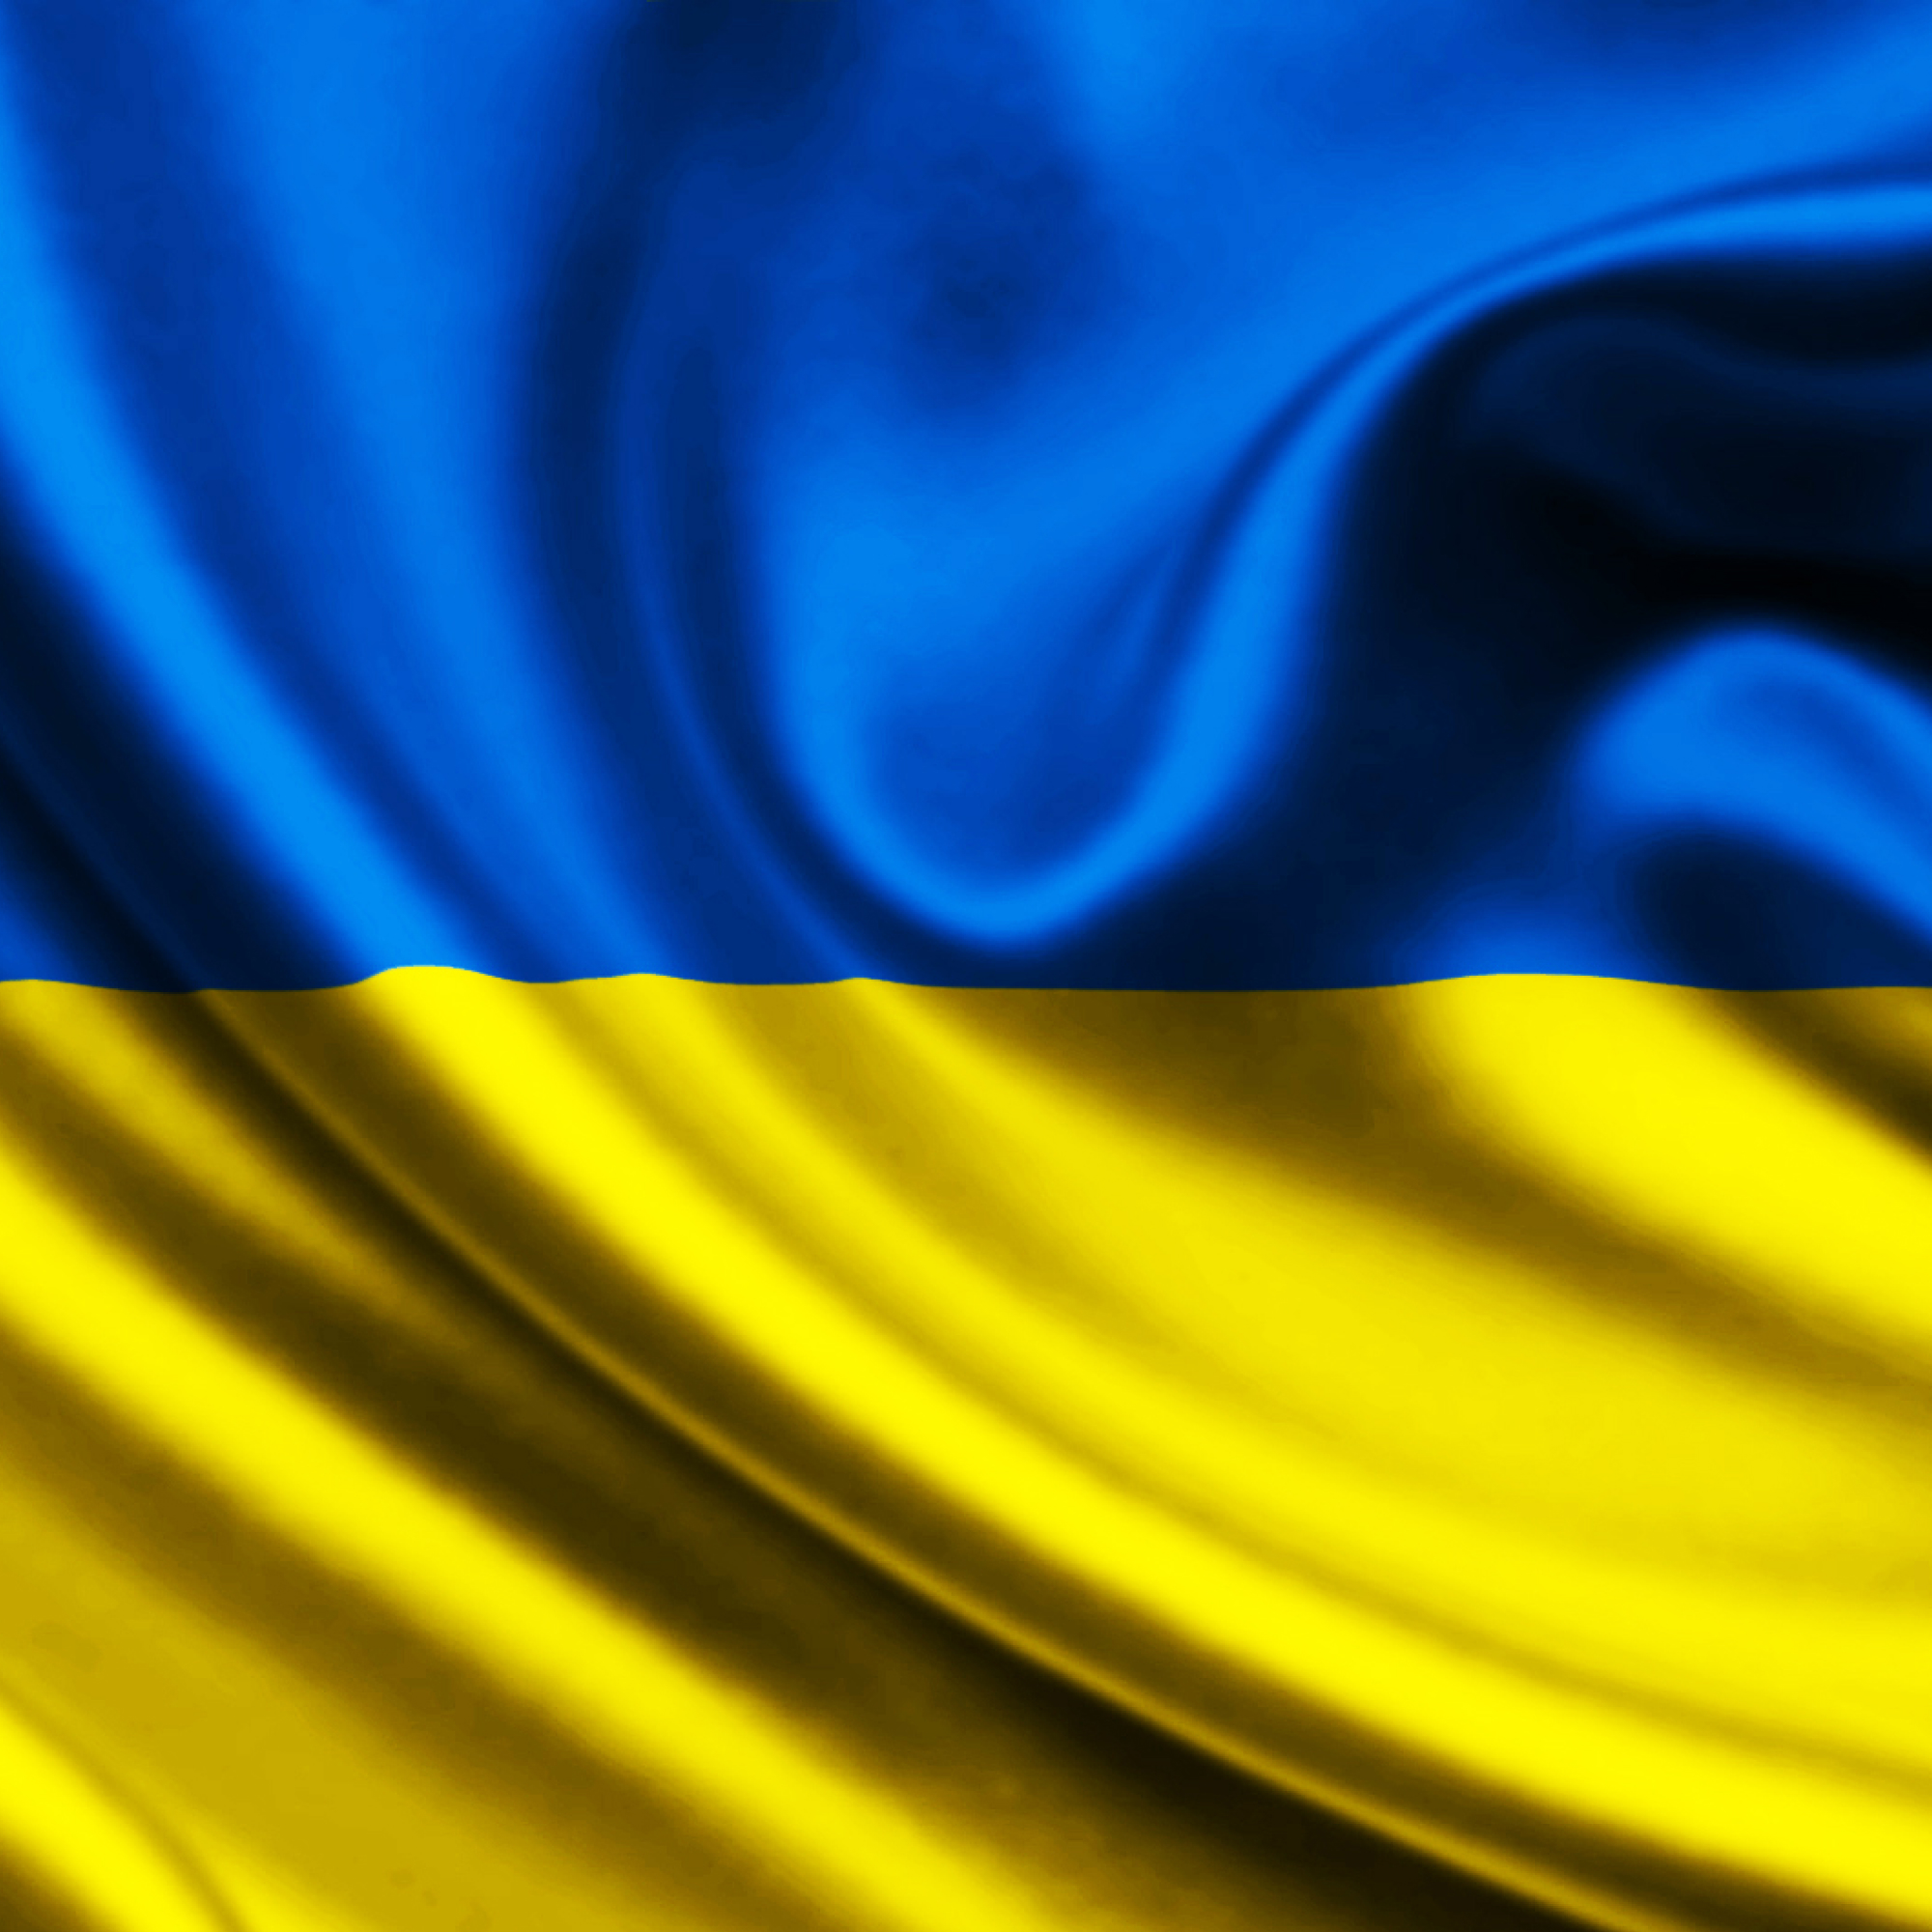 Прапор України 1400х900 мм, атлас